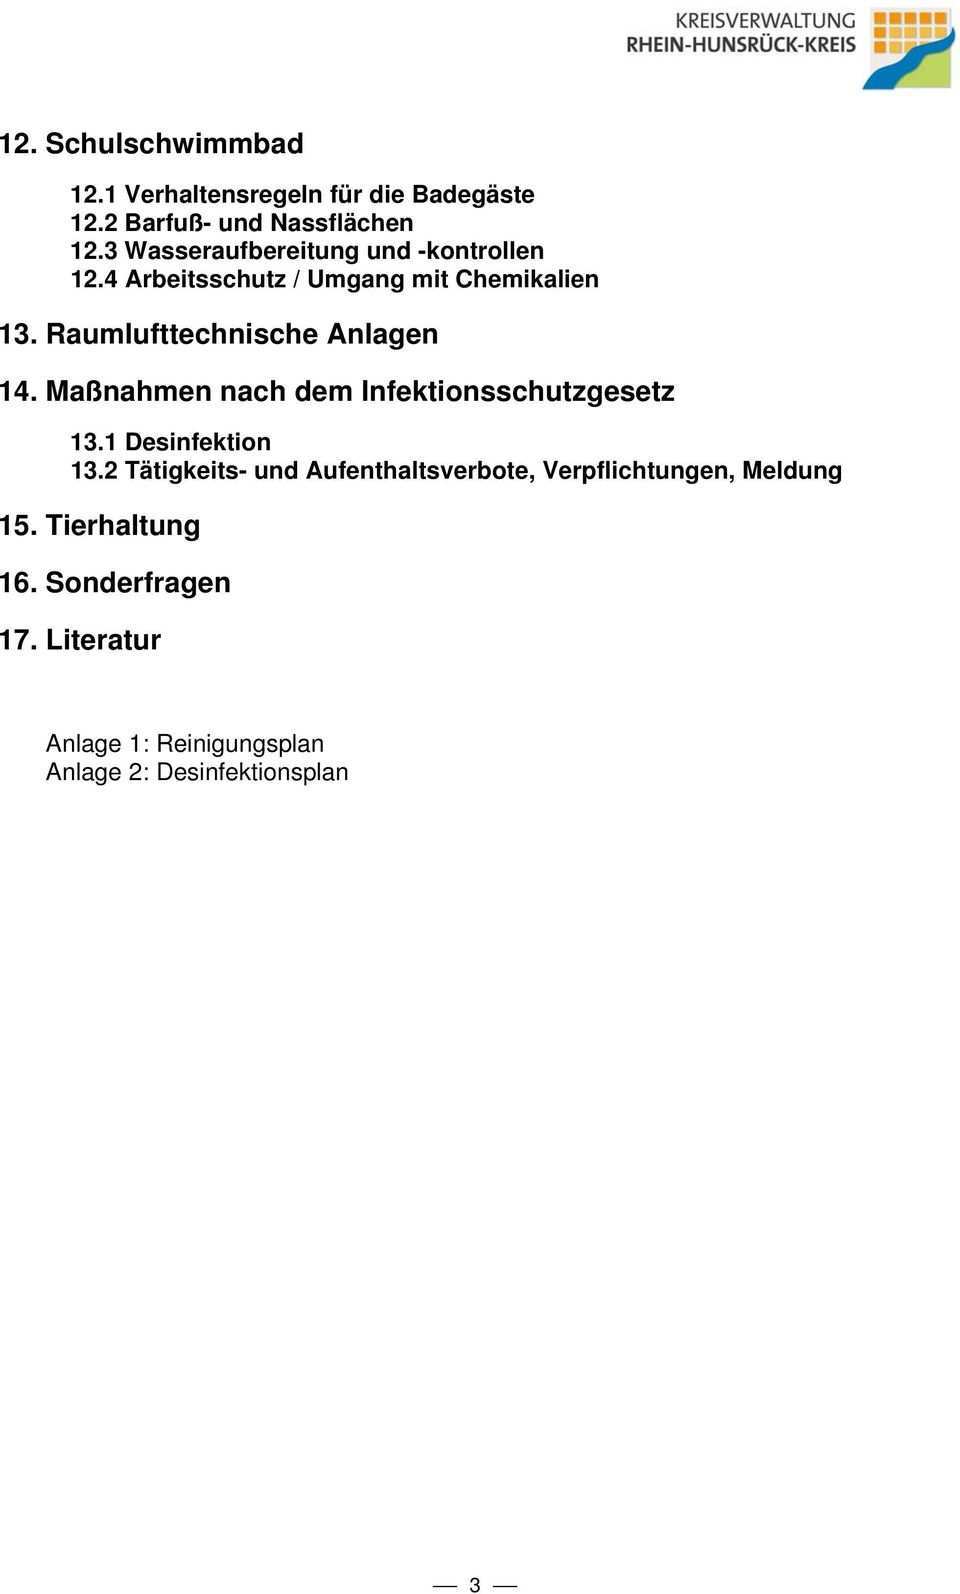 Muster Hygieneplan Fur Schulen In Tragerschaft Des Rhein Hunsruck Kreises Pdf Free Download